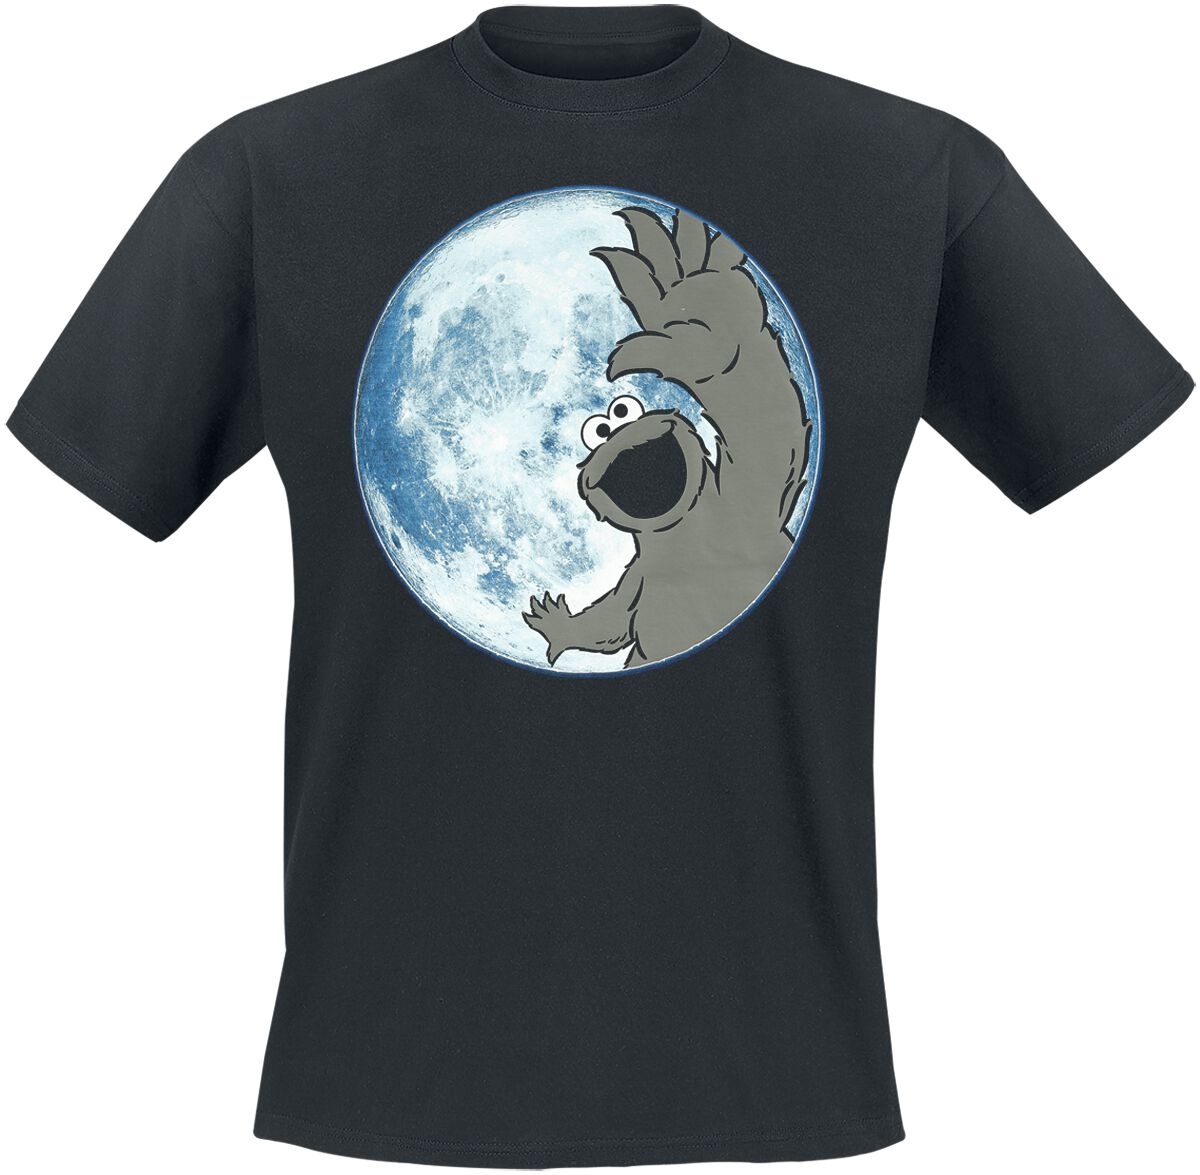 Sesamstraße T-Shirt - Moon - Cookie Monster - S bis 3XL - für Männer - Größe XL - schwarz  - EMP exklusives Merchandise!